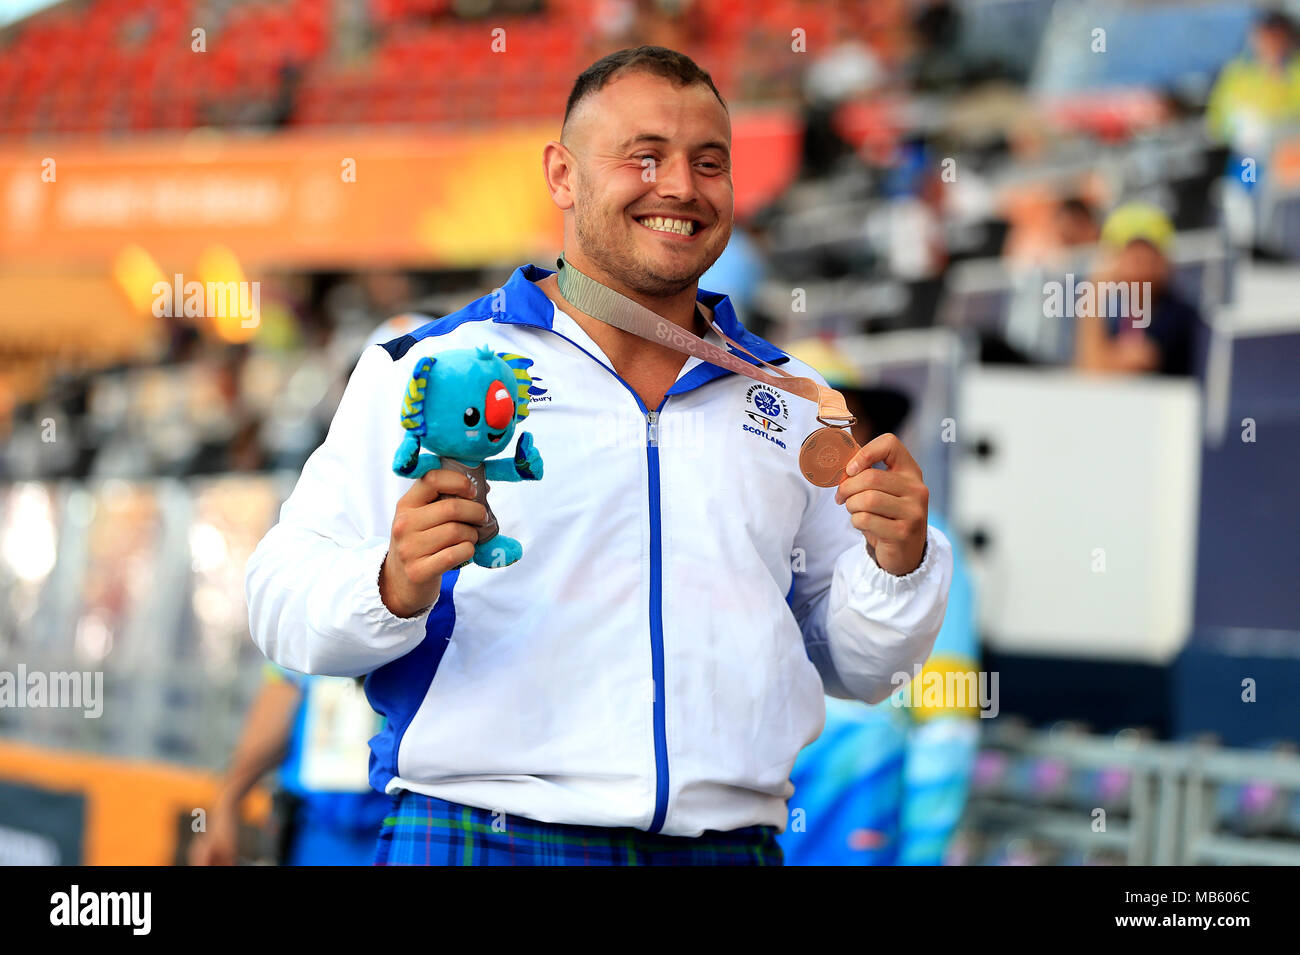 Schottland's Mark Trocken feiert mit seiner Bronzemedaille bei den Herren Hammer Finale bei den Carrara Stadion bei Tag vier der 2018 Commonwealth Games in der Gold Coast, Australien werfen. Stockfoto